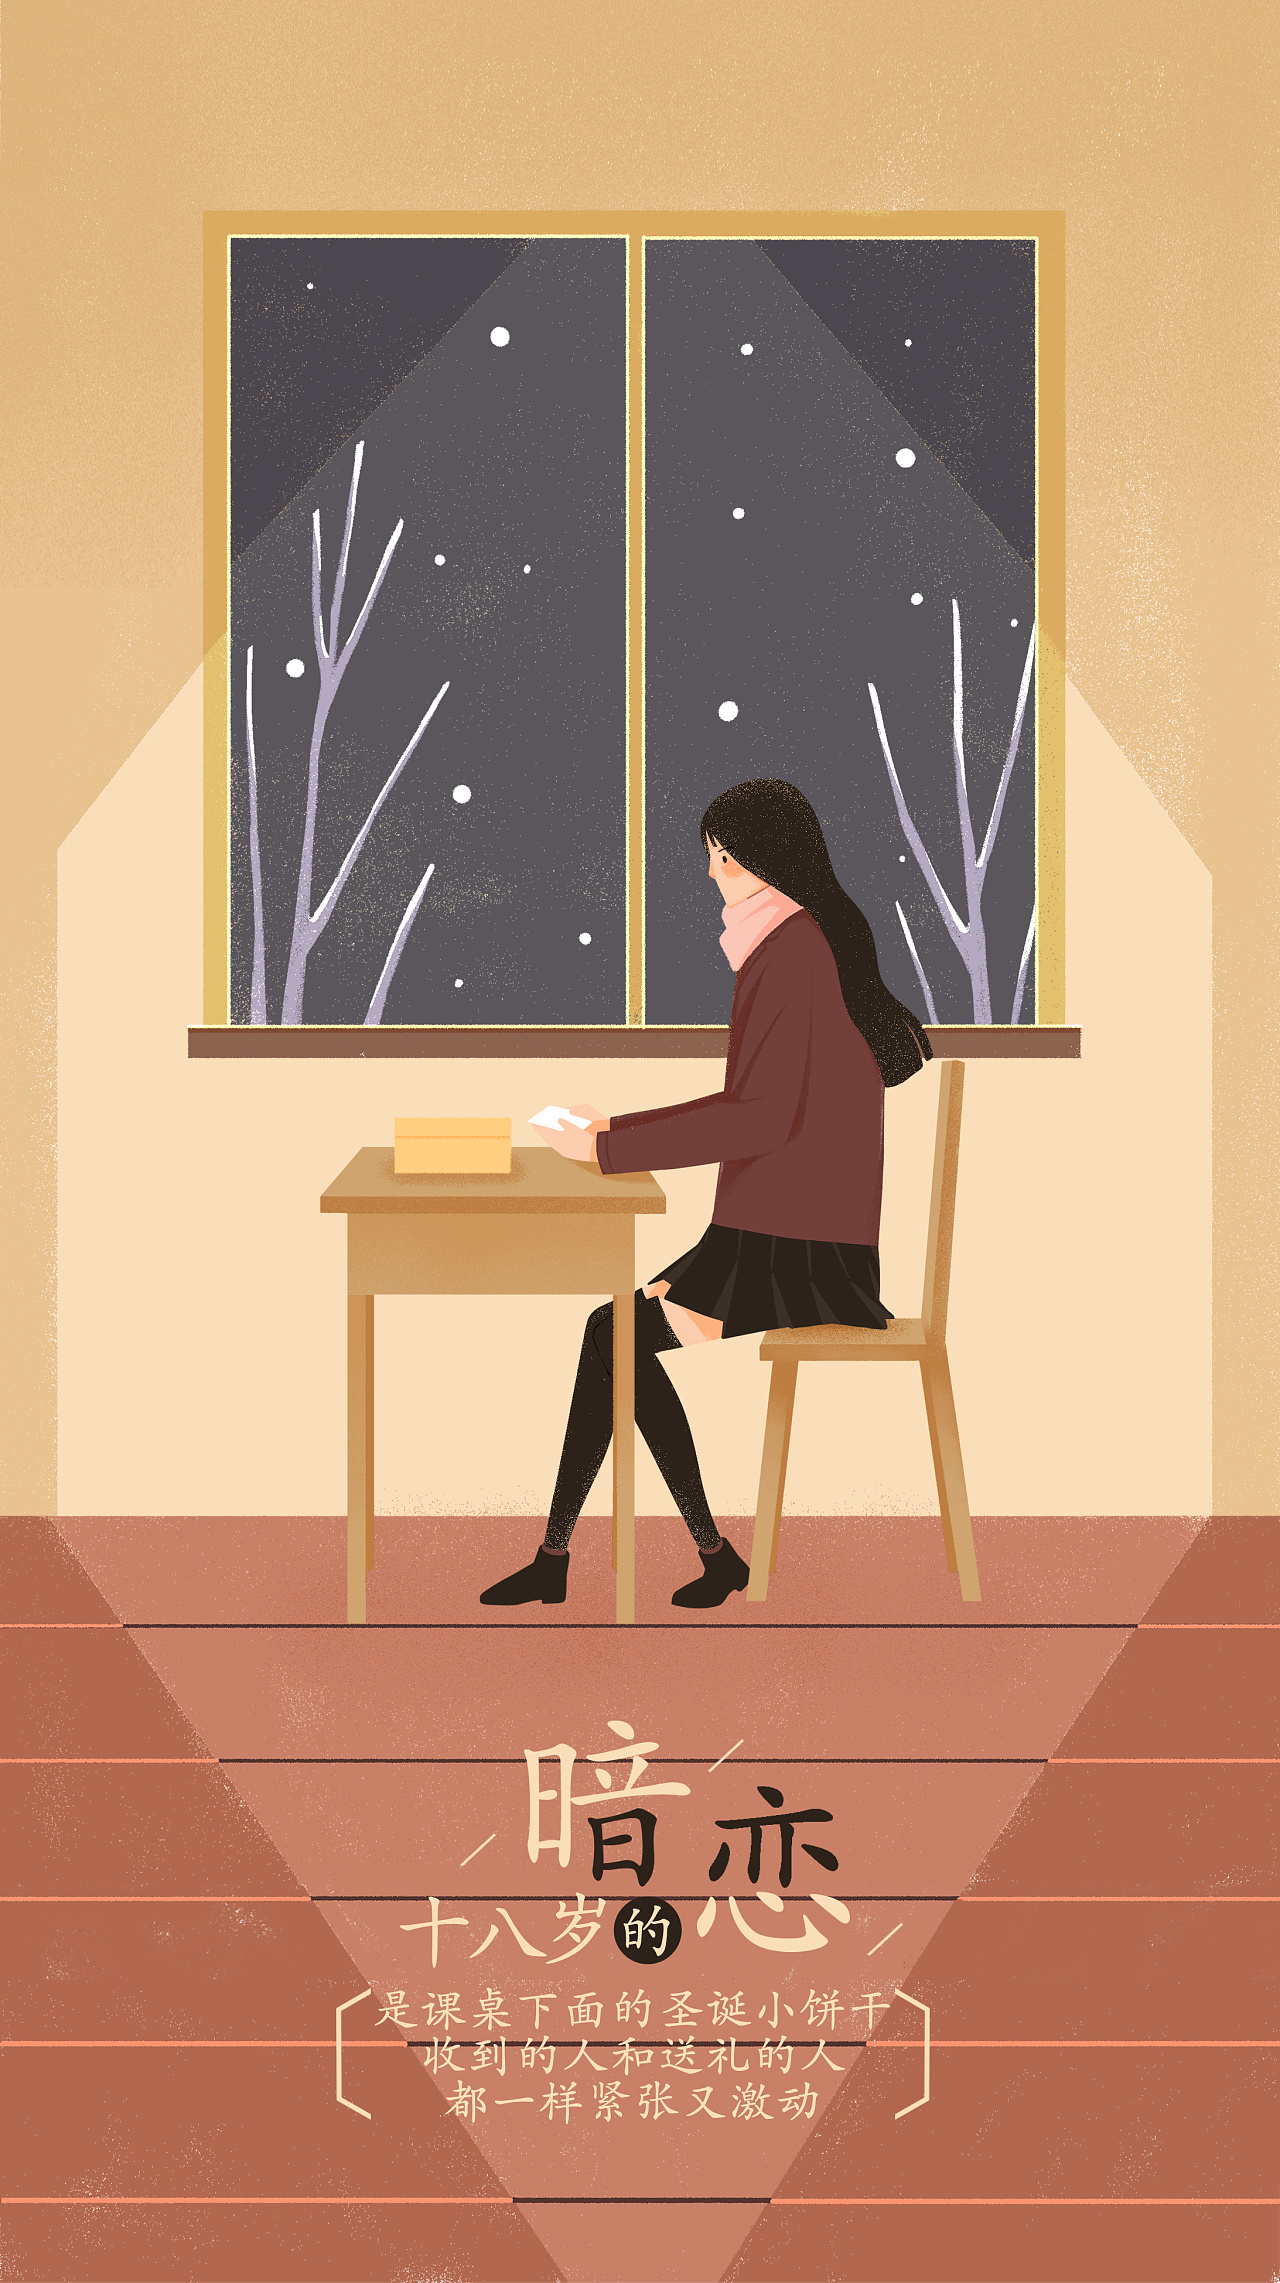 我的爱情特别酷: 青少年的感情故事 (分享分想, #13) by 曲慧娟 | Goodreads